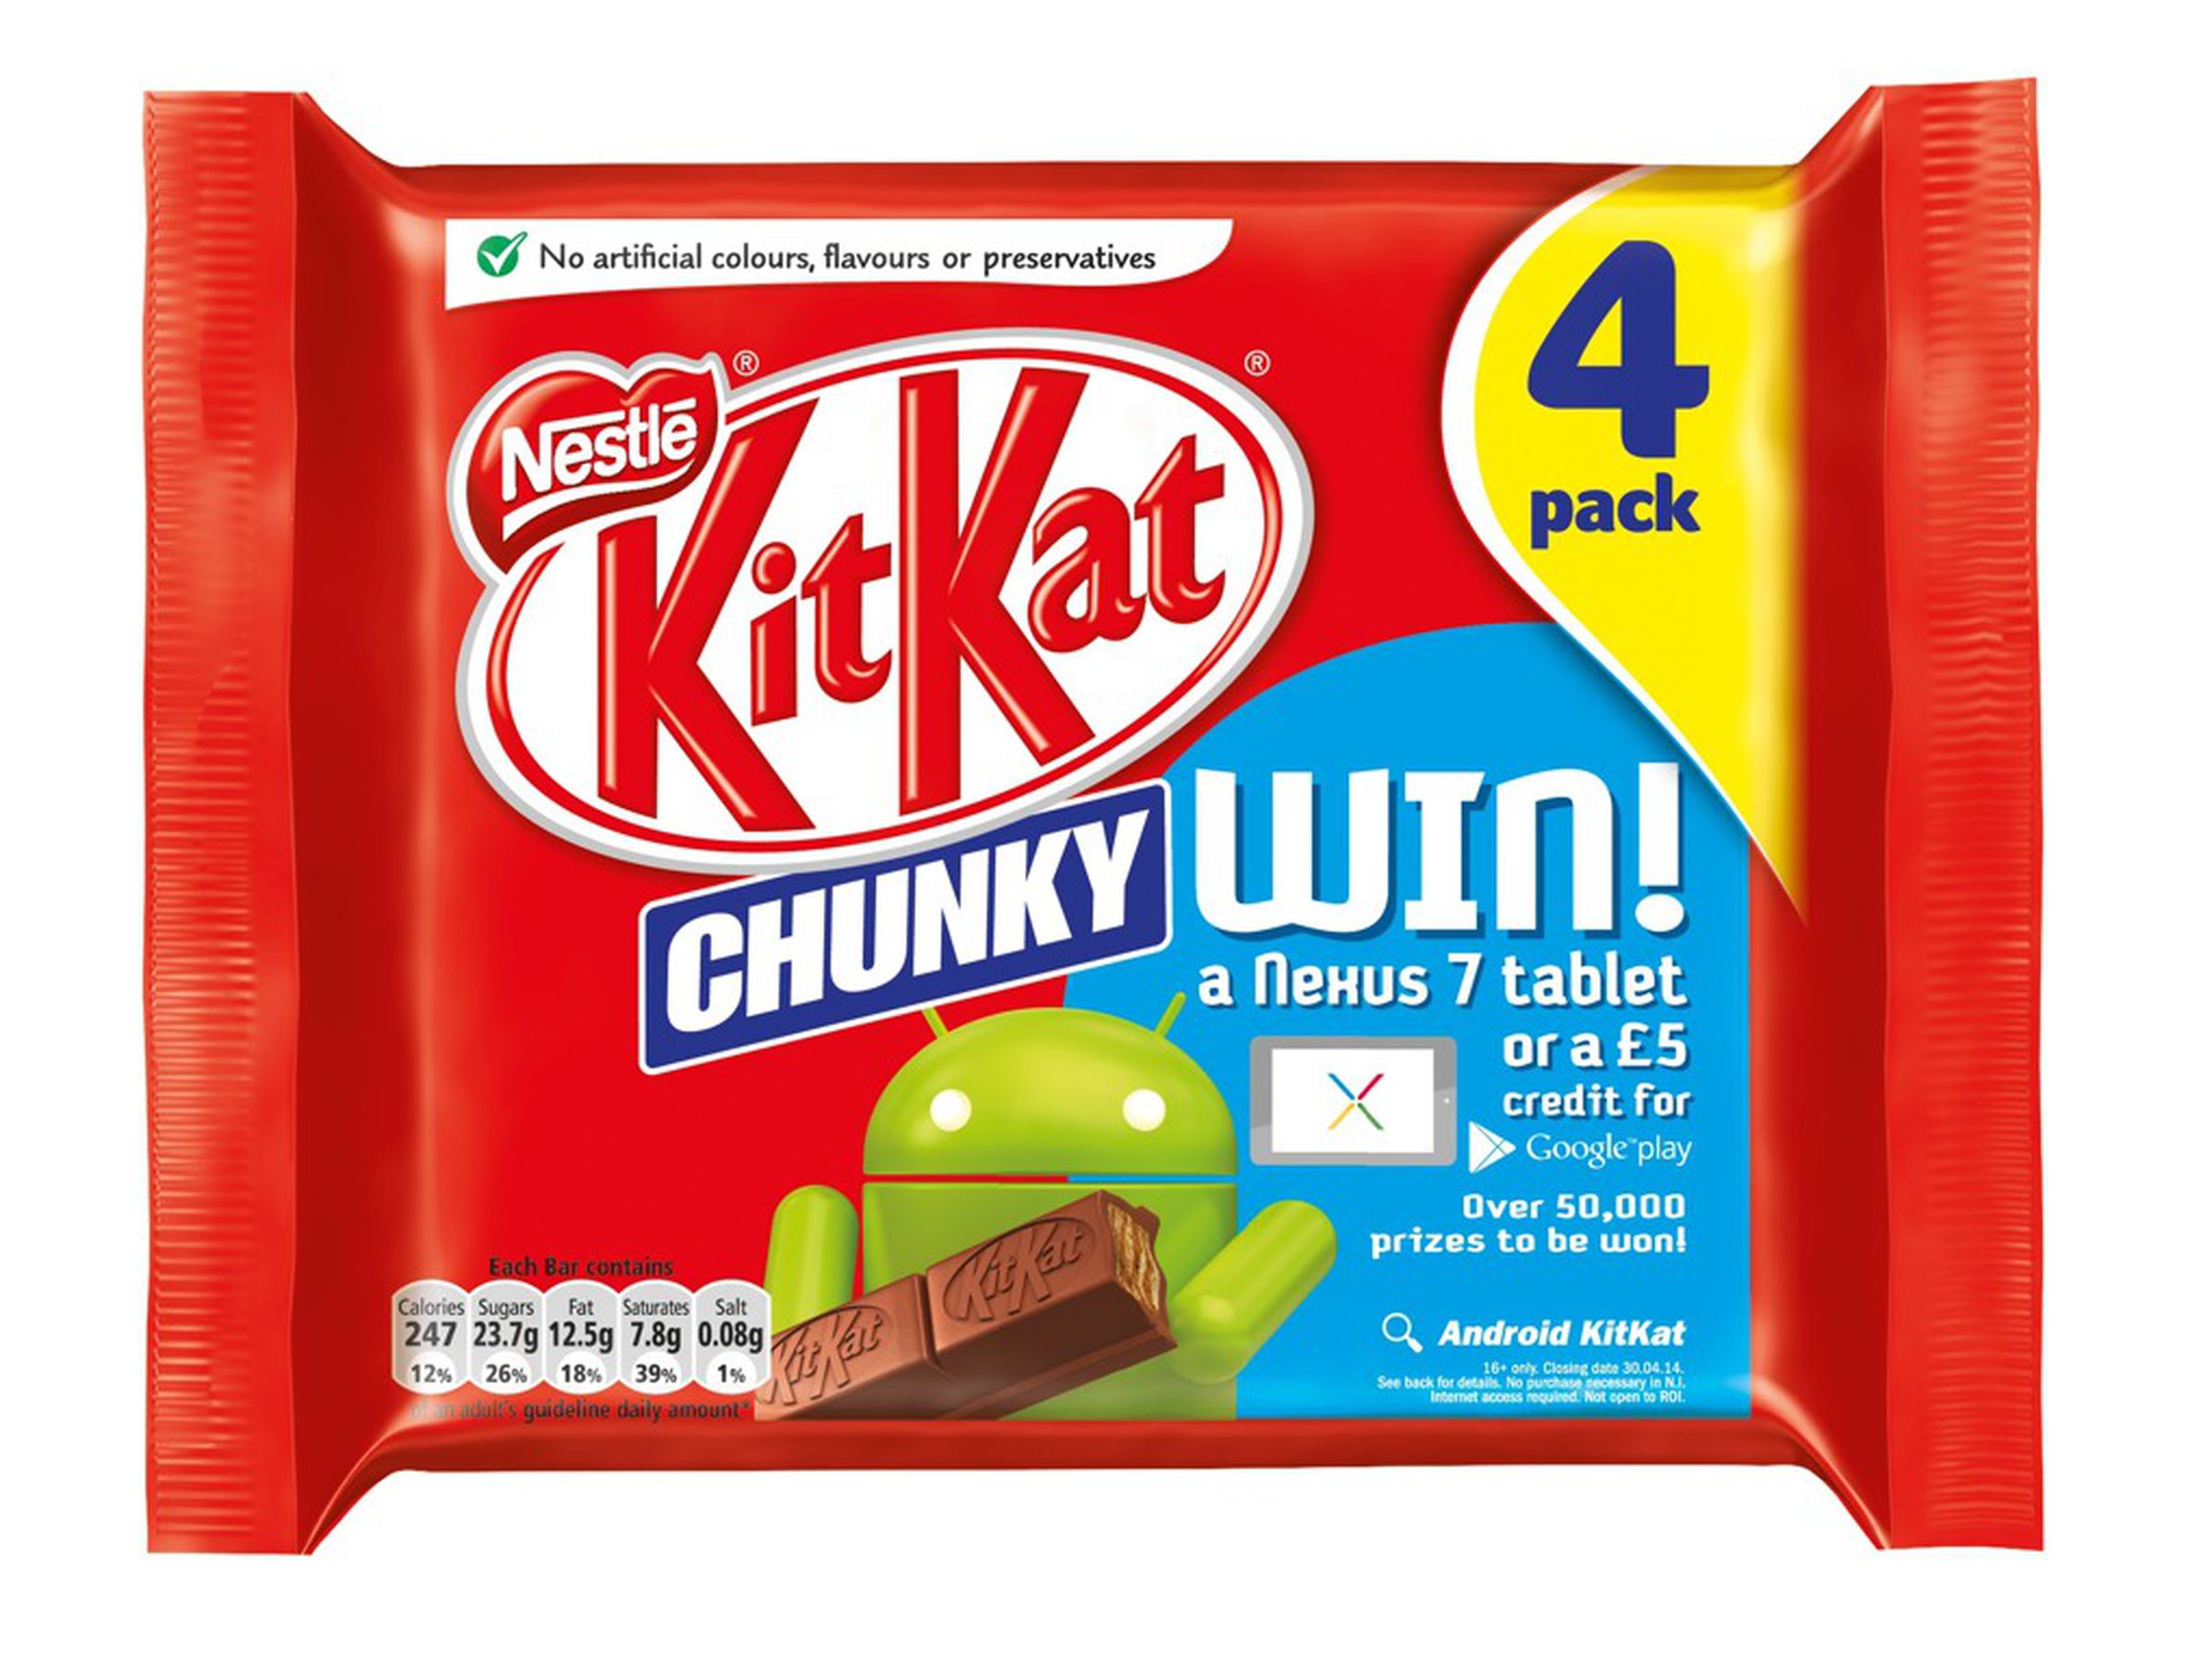 Android KitKats around the world